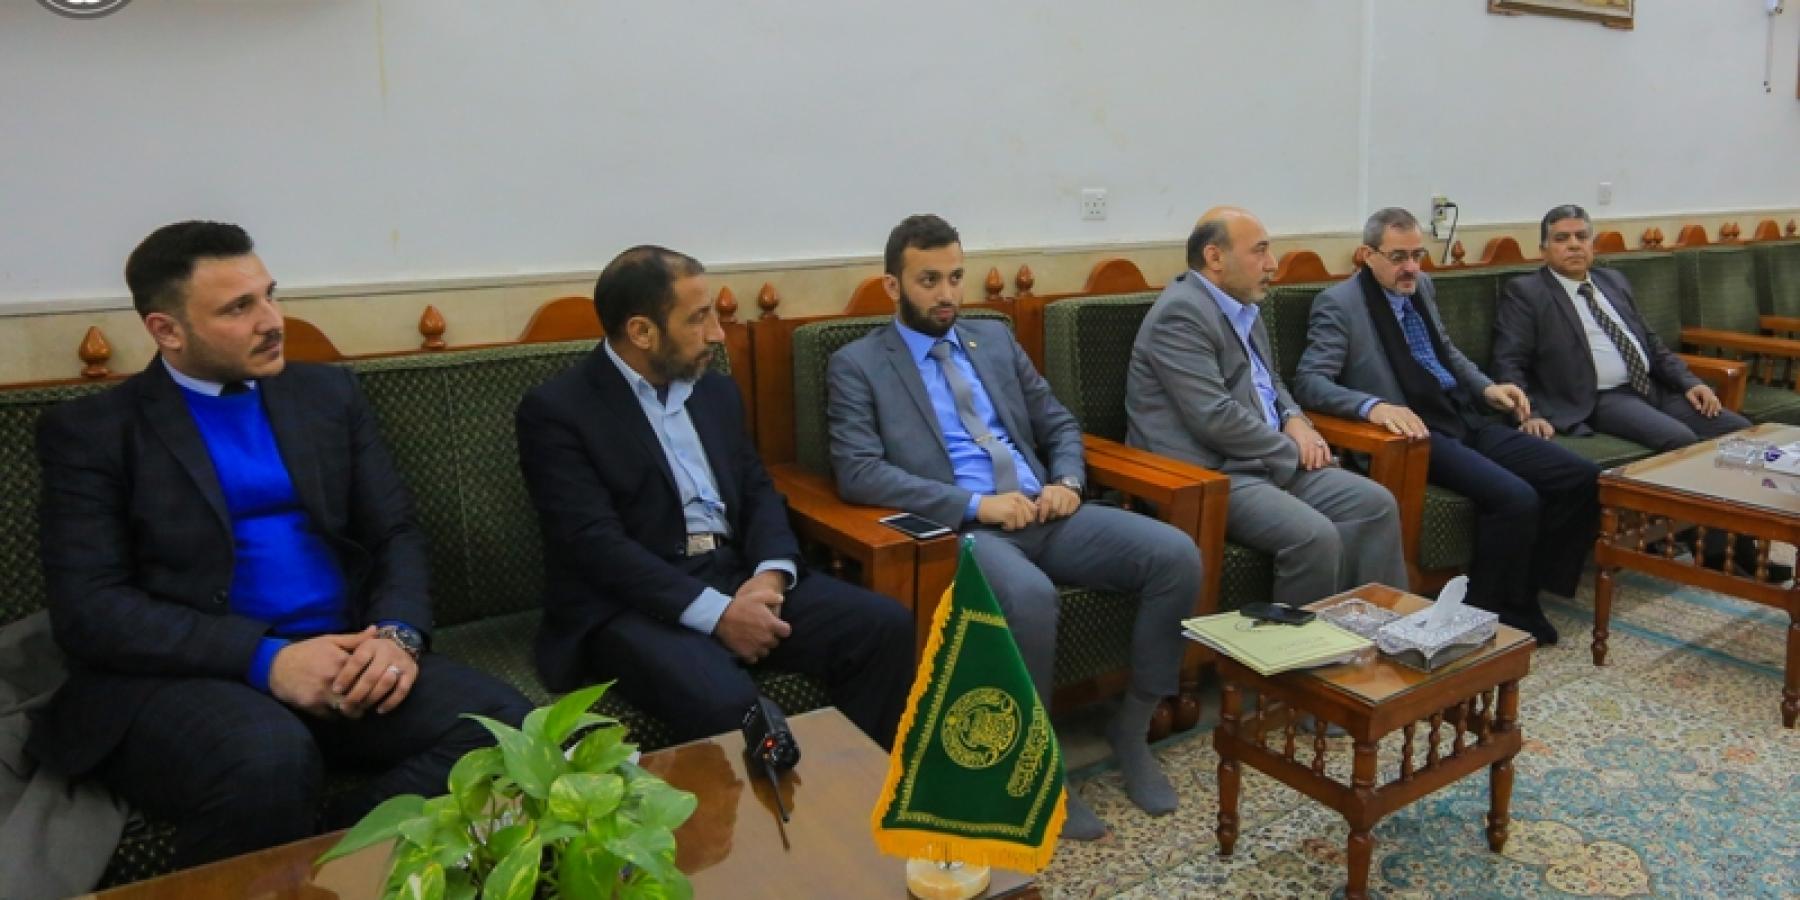  ممثلو مجلس الشعب السوري: مرقد الإمام علي (ع) يعد منطلقا للتأثير الحضاري والإنساني والحوار بين مختلف الأطياف والأديان